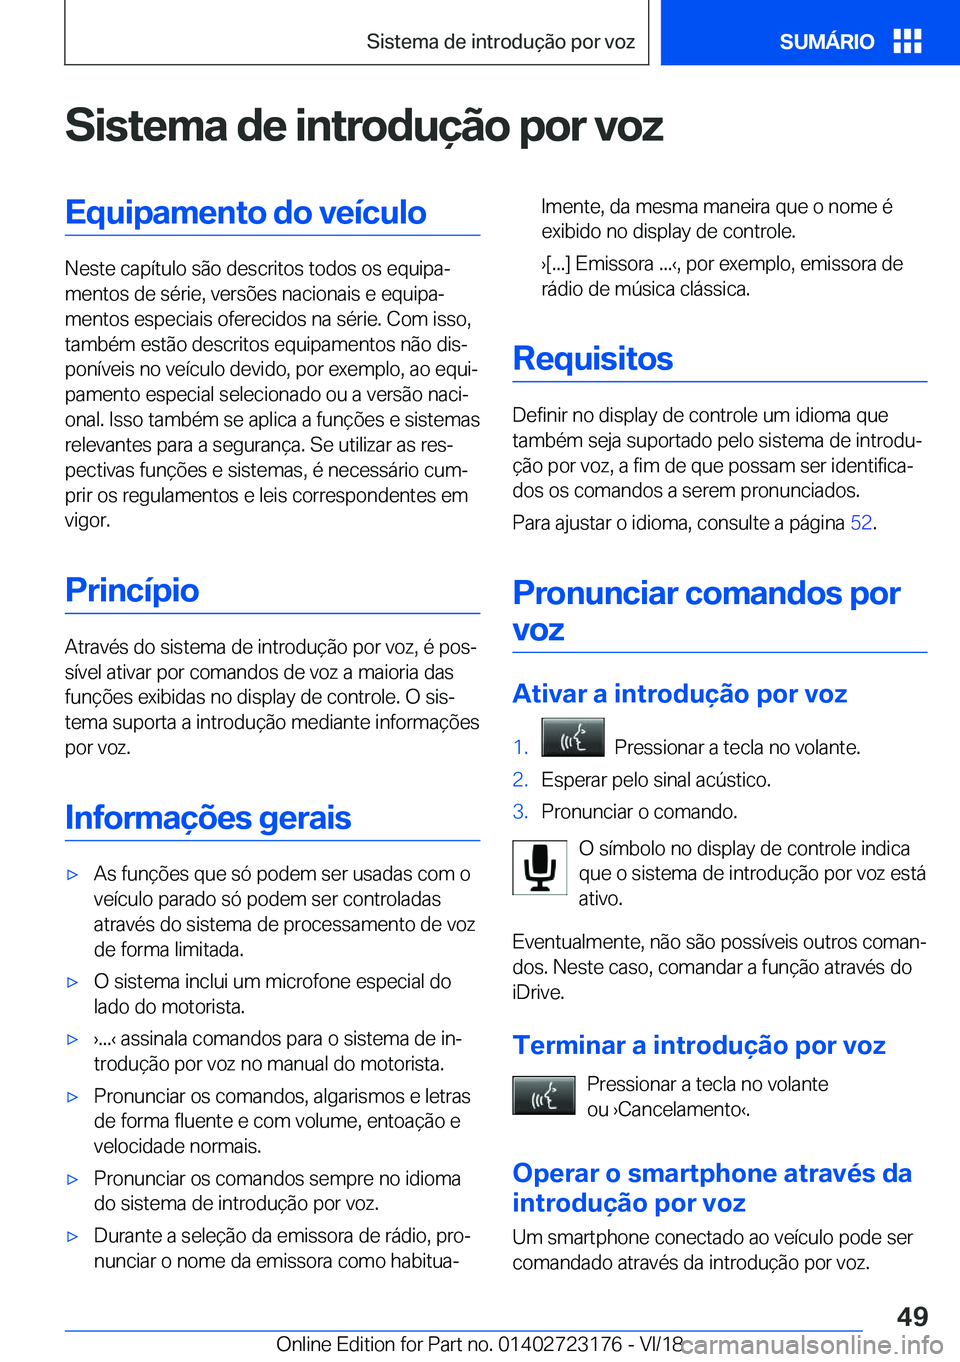 BMW 4 SERIES GRAN COUPE 2019  Manual do condutor (in Portuguese) �S�i�s�t�e�m�a��d�e��i�n�t�r�o�d�u�